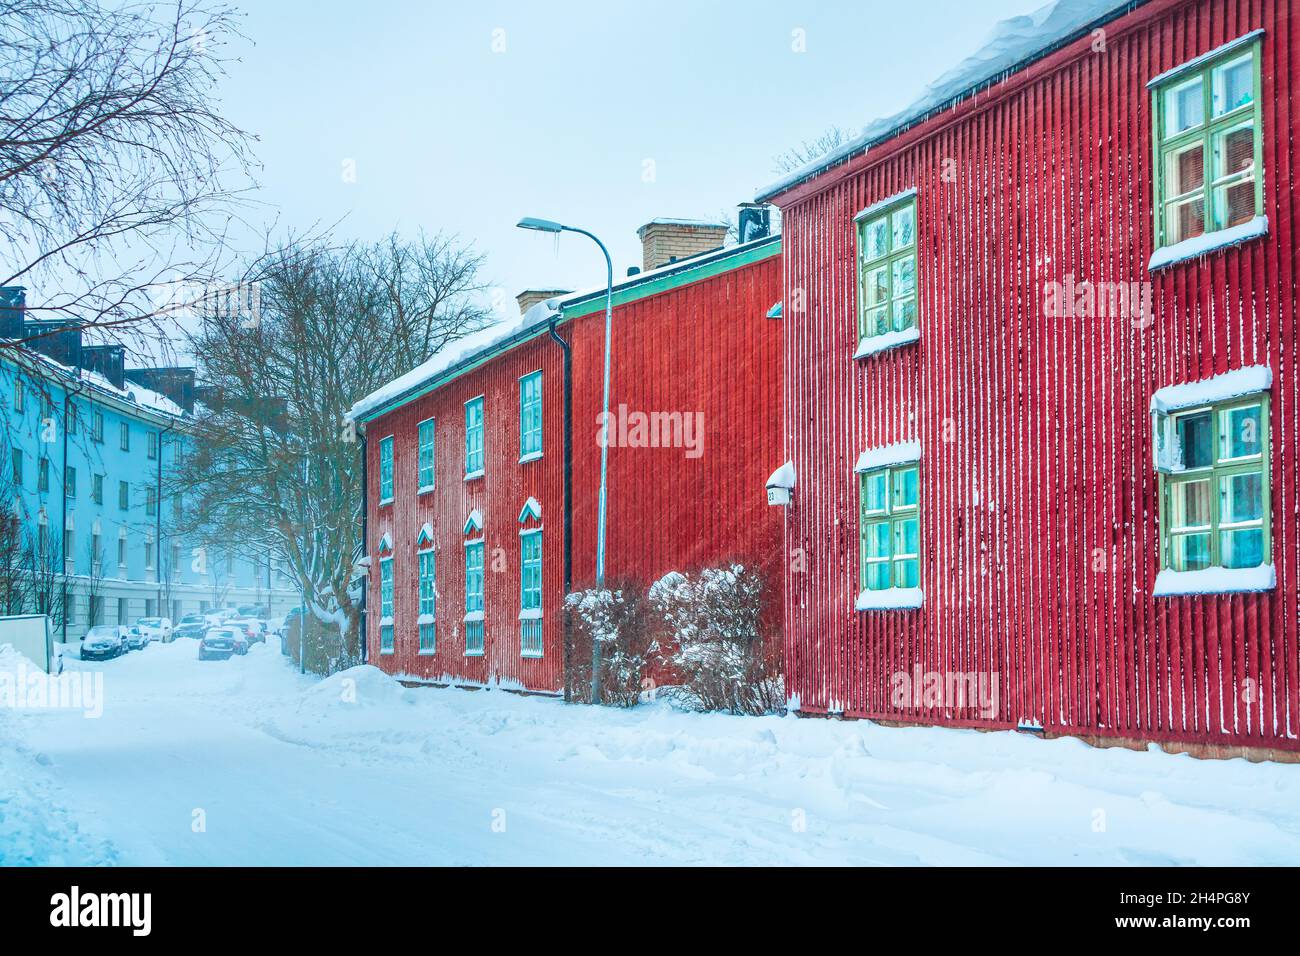 Tempête de neige à Helsinki.Belle scène finlandaise d'hiver.Façades de bâtiments colorées dans une rue couverte de neige.Vieilles maisons en bois rouge en ville en Finlande Banque D'Images